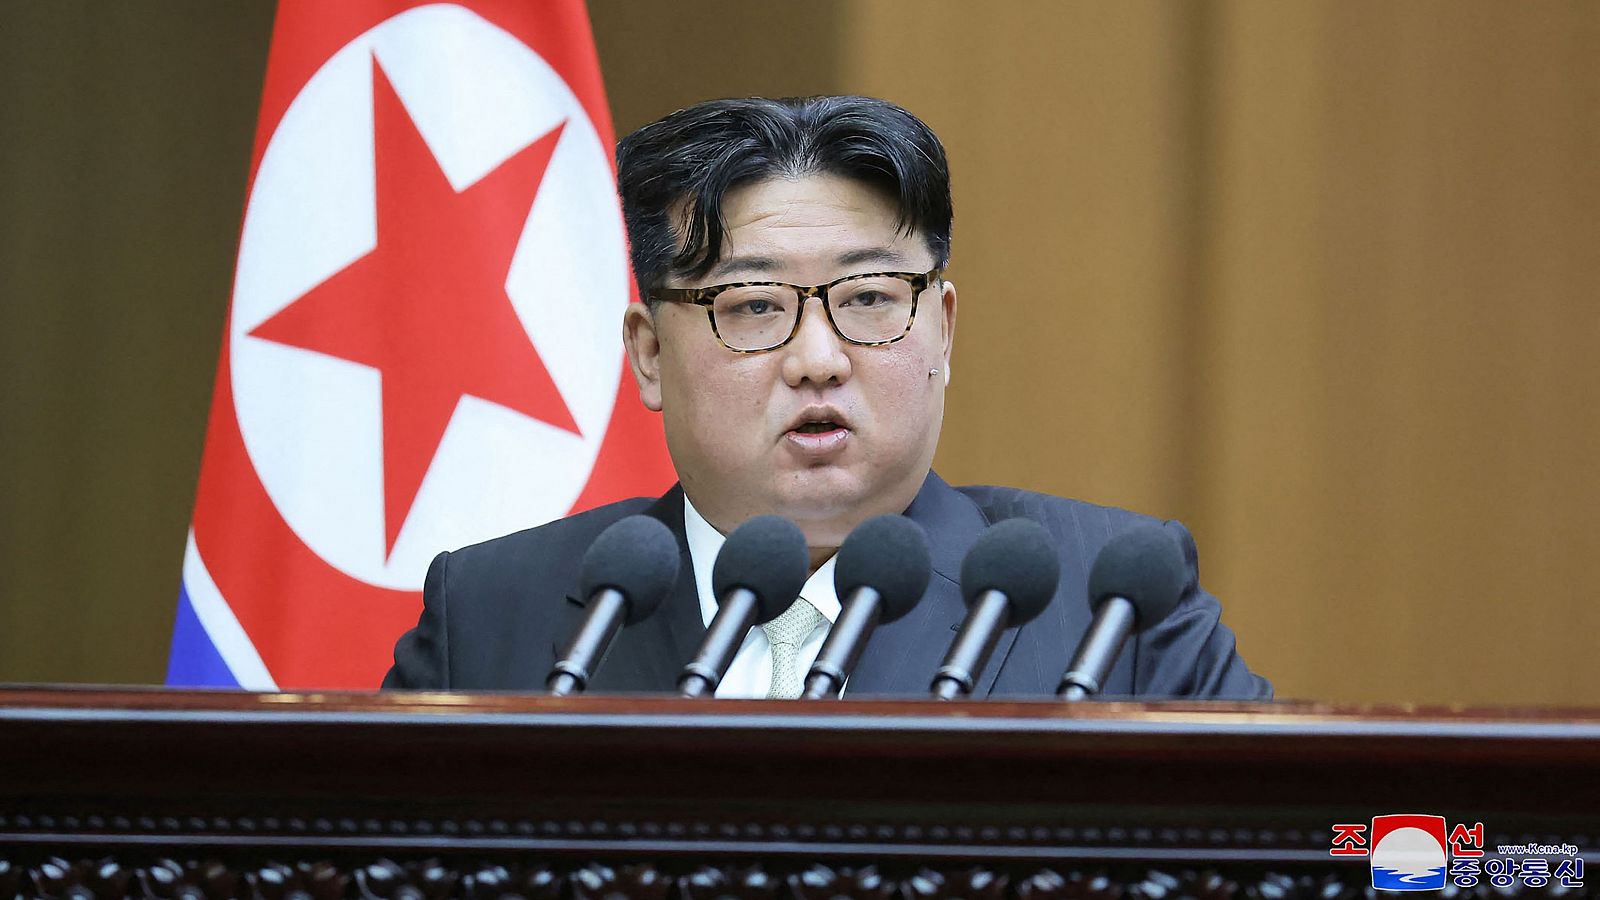 El líder de Corea del Norte, Kim Jong-un, durante una sesión de la Asamblea Nacional